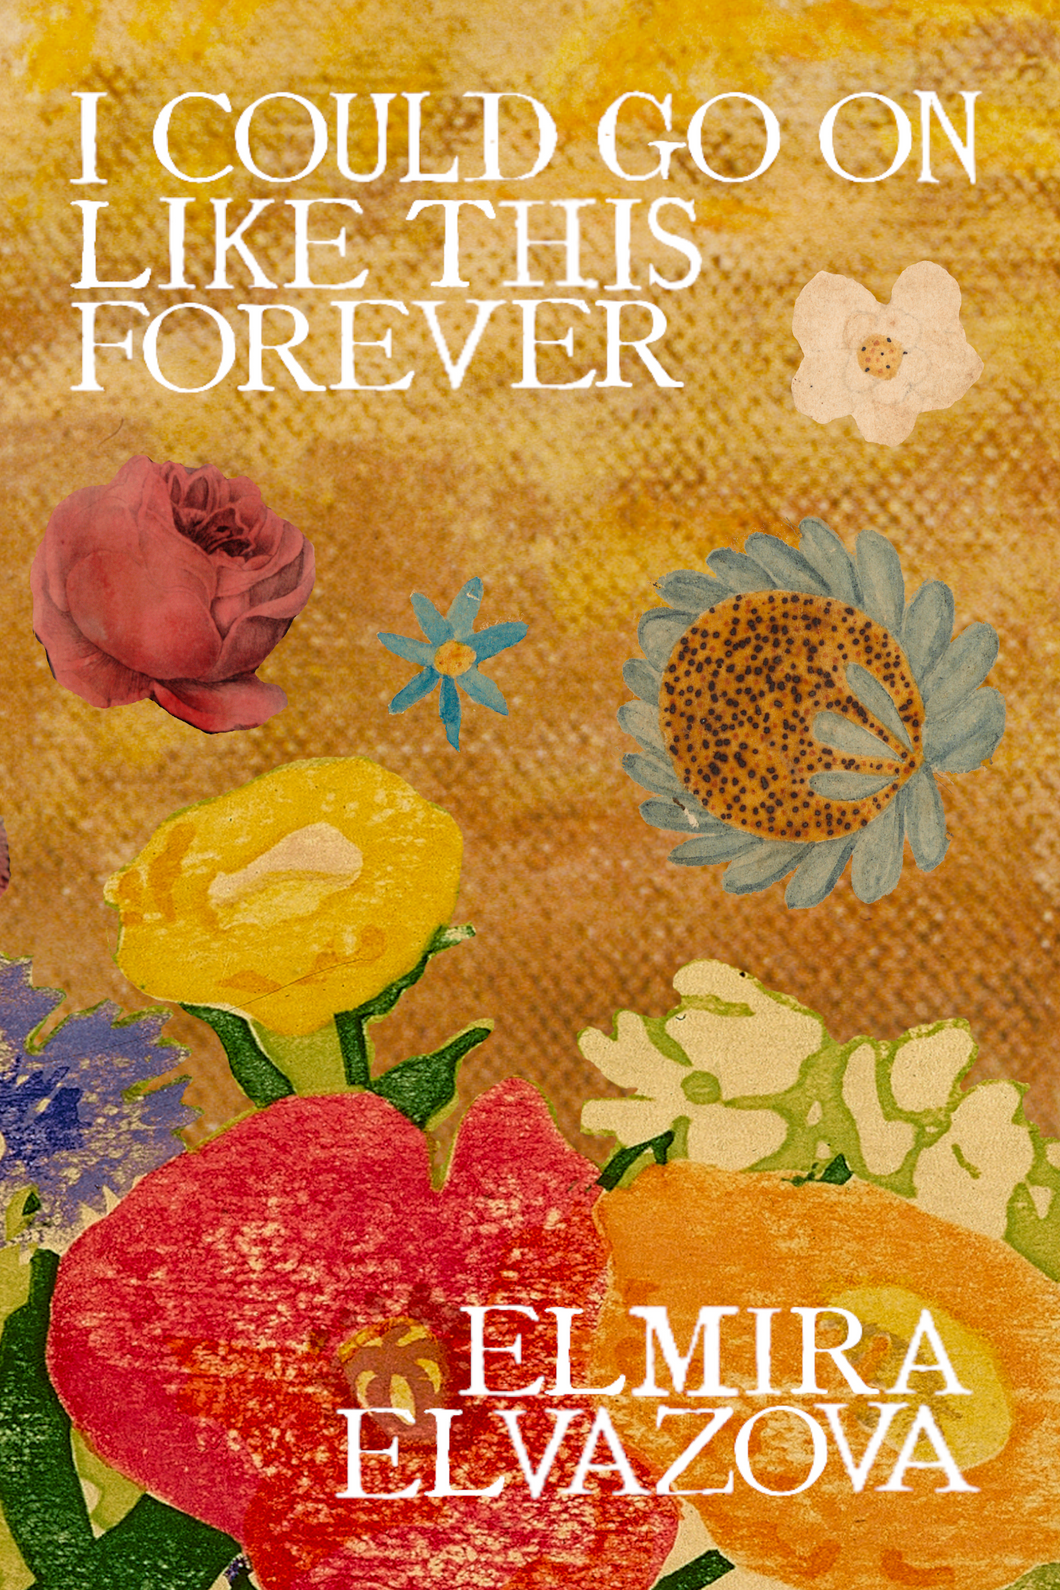 I Could Go On Like This Forever, by Elmira Elvazova-Print Books-Bottlecap Press